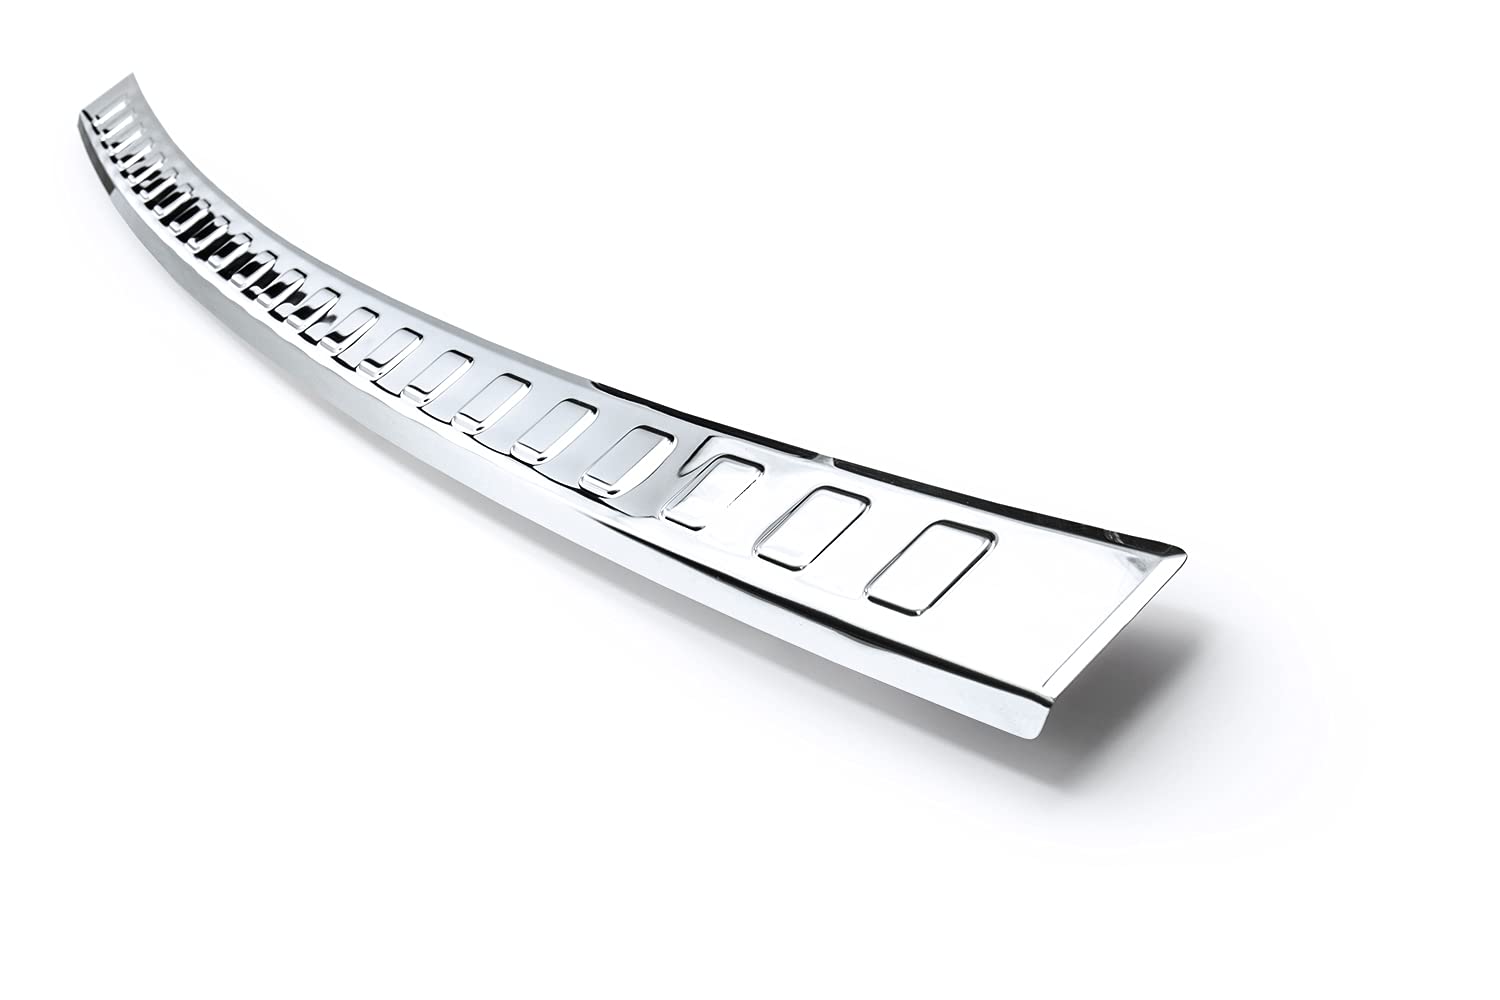 teileplus24 L725 Ladekantenschutz V2A Edelstahl kompatibel mit Hyundai Tucson 3 ab Bj. 2021- Abkantung, Farbe:Silber glänzend von teileplus24